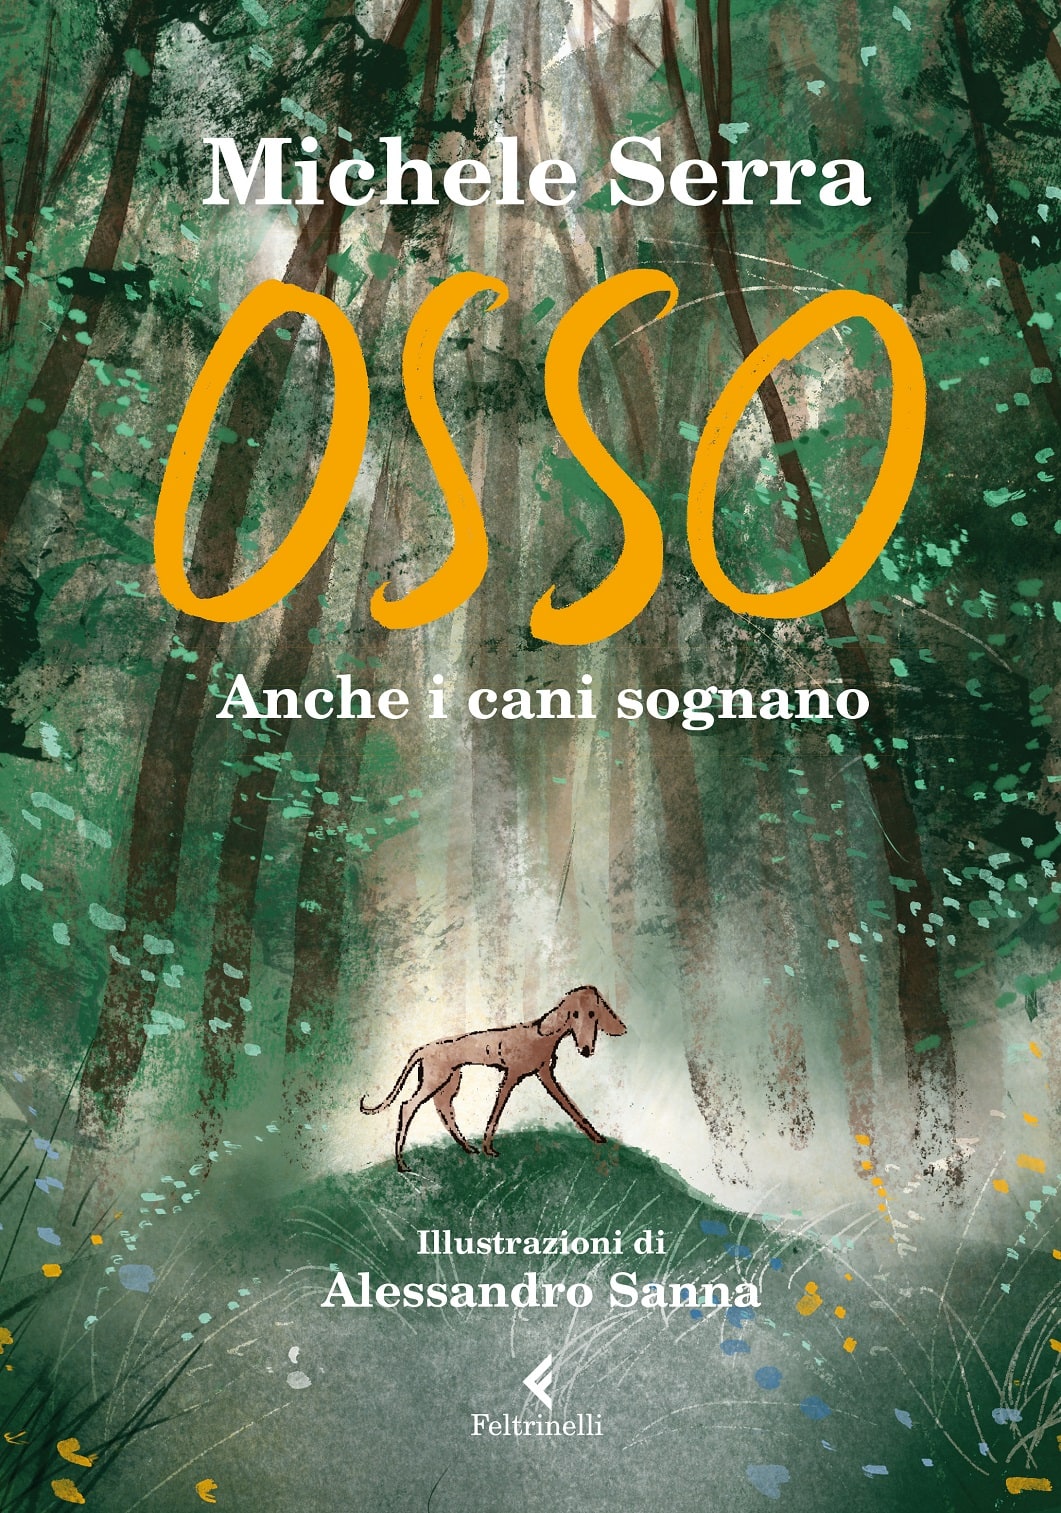 La copertina di "Osso" di Michele Serra disegnata da Alessandro Sanna